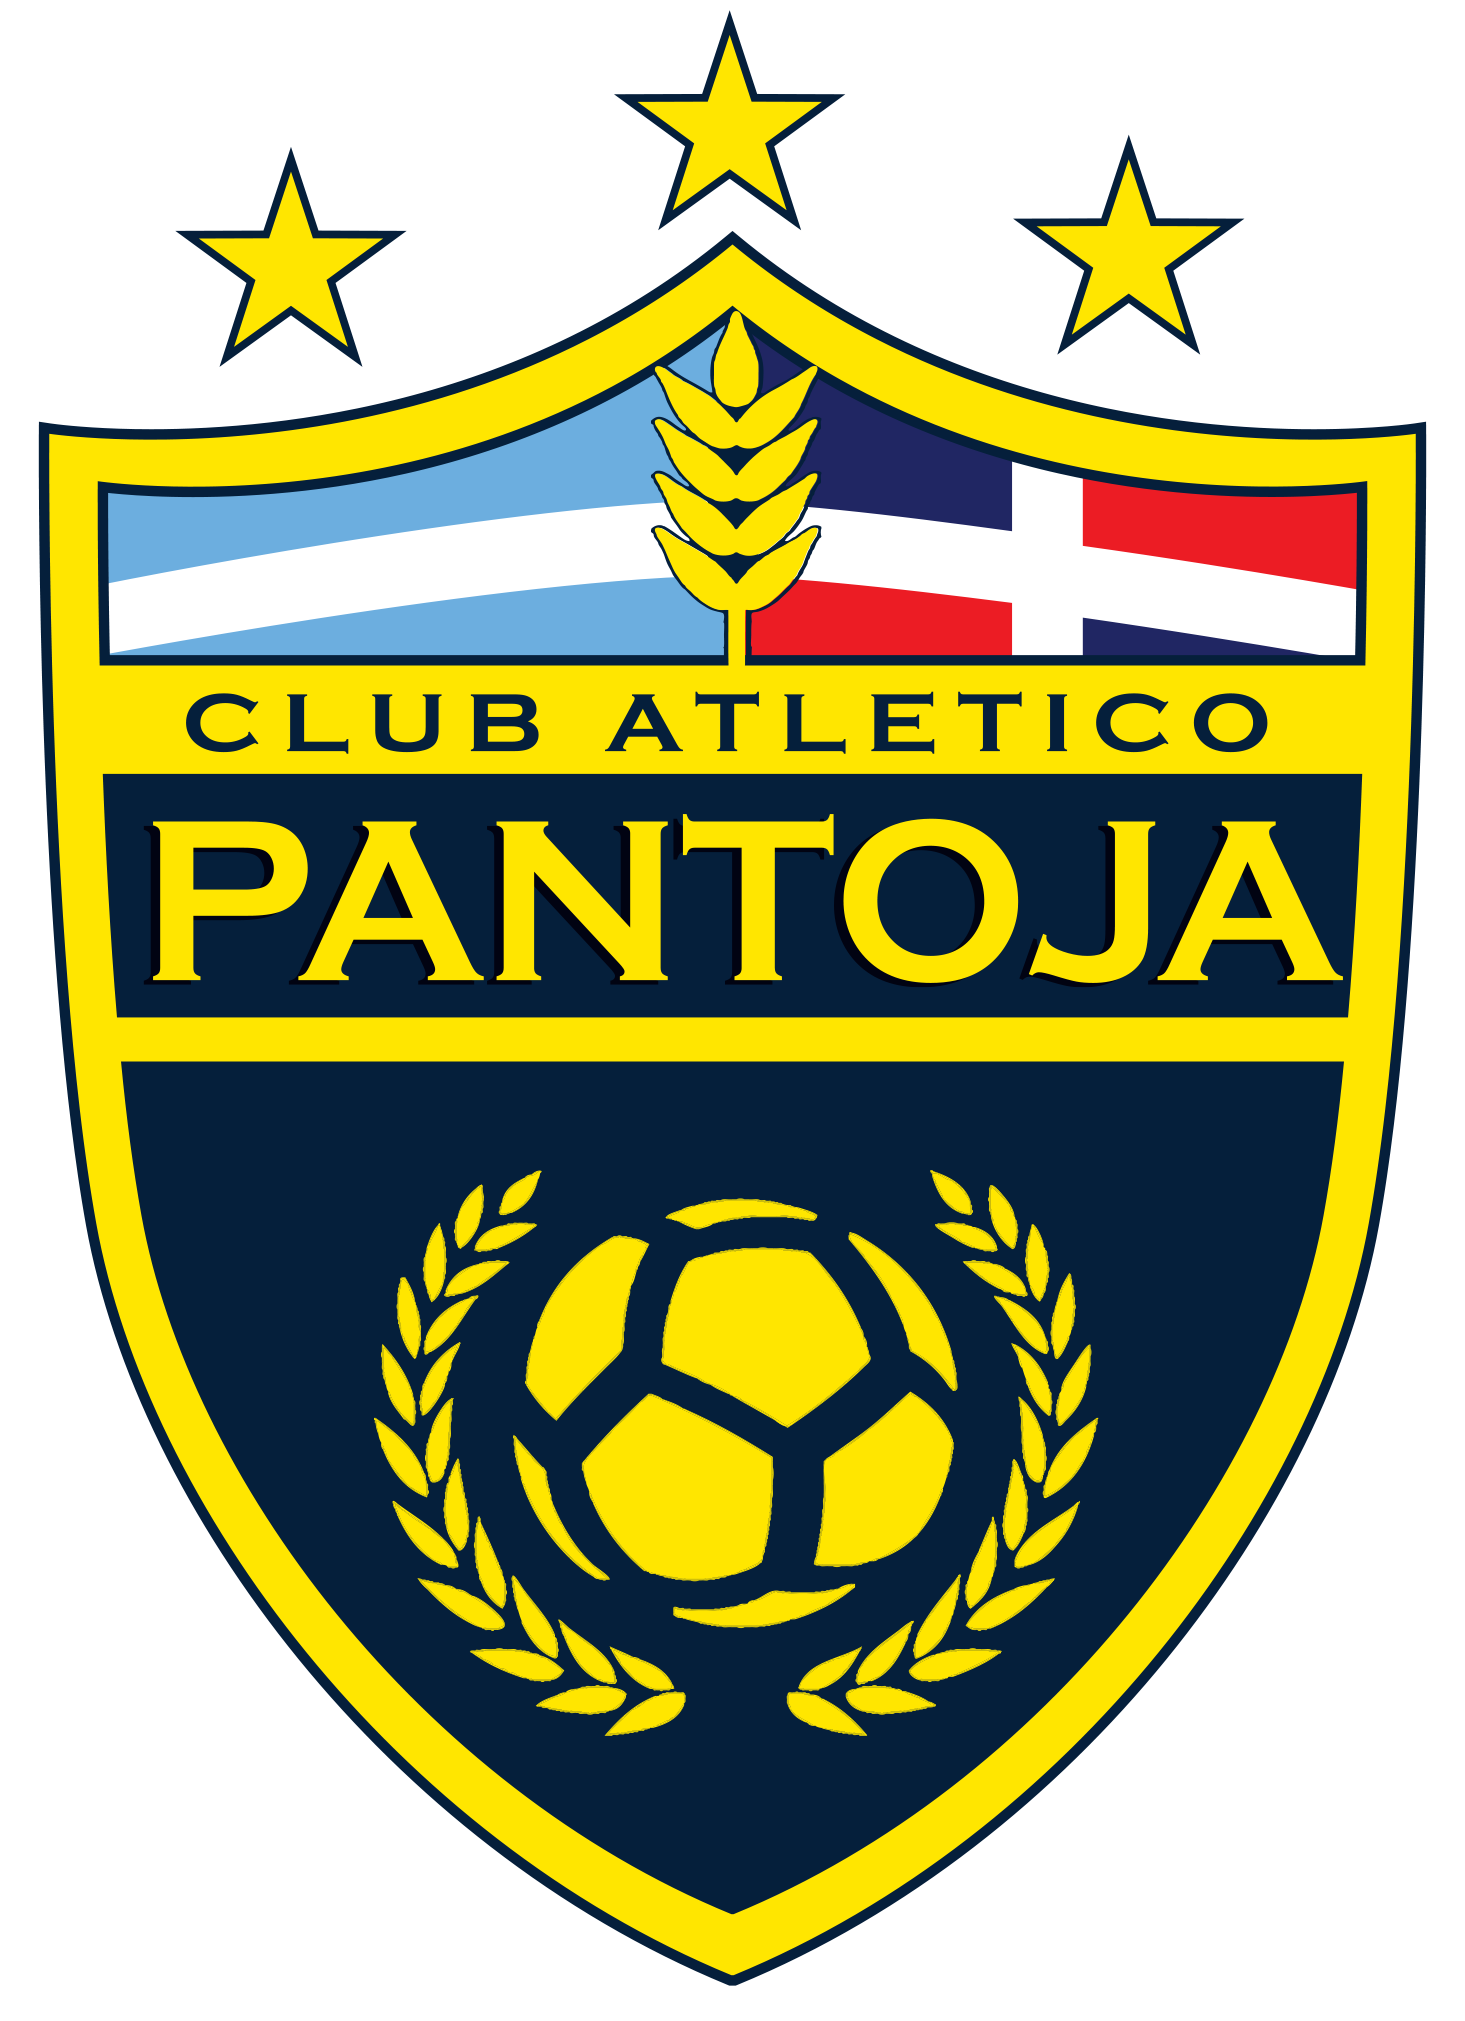 Atletico Pantoja team logo